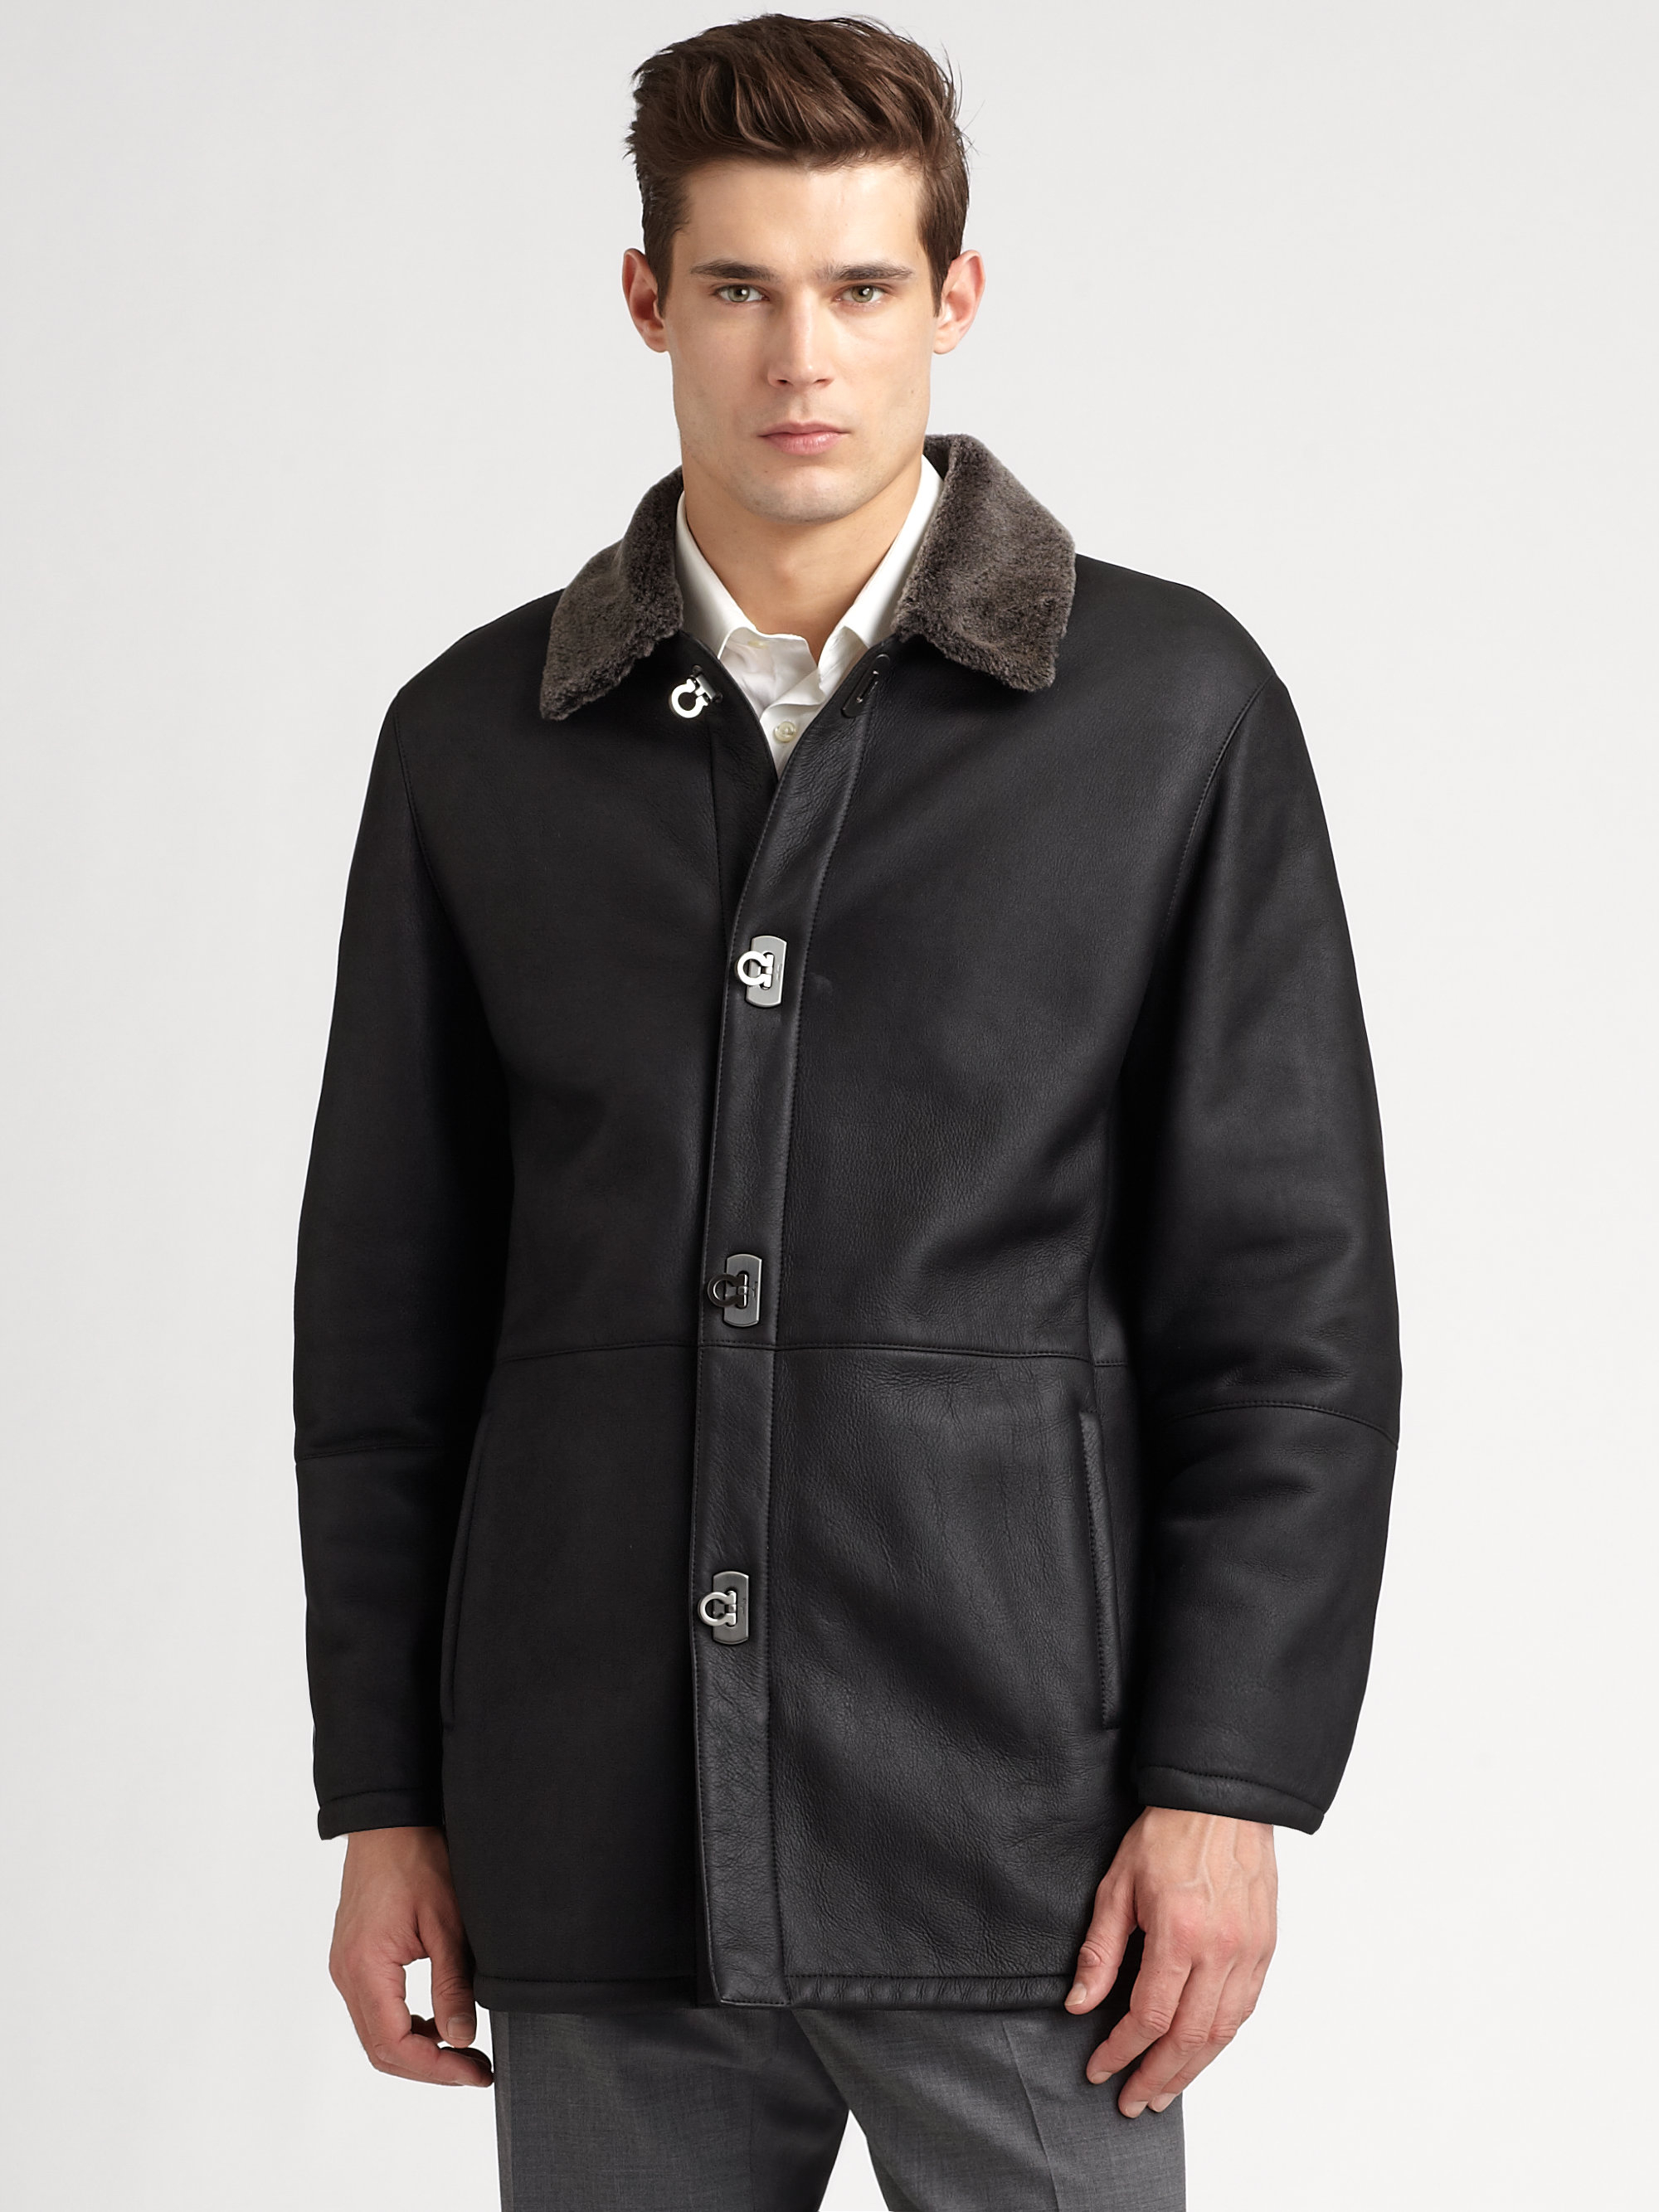 Ferragamo Shearling Jacket in Brown for Men | Lyst